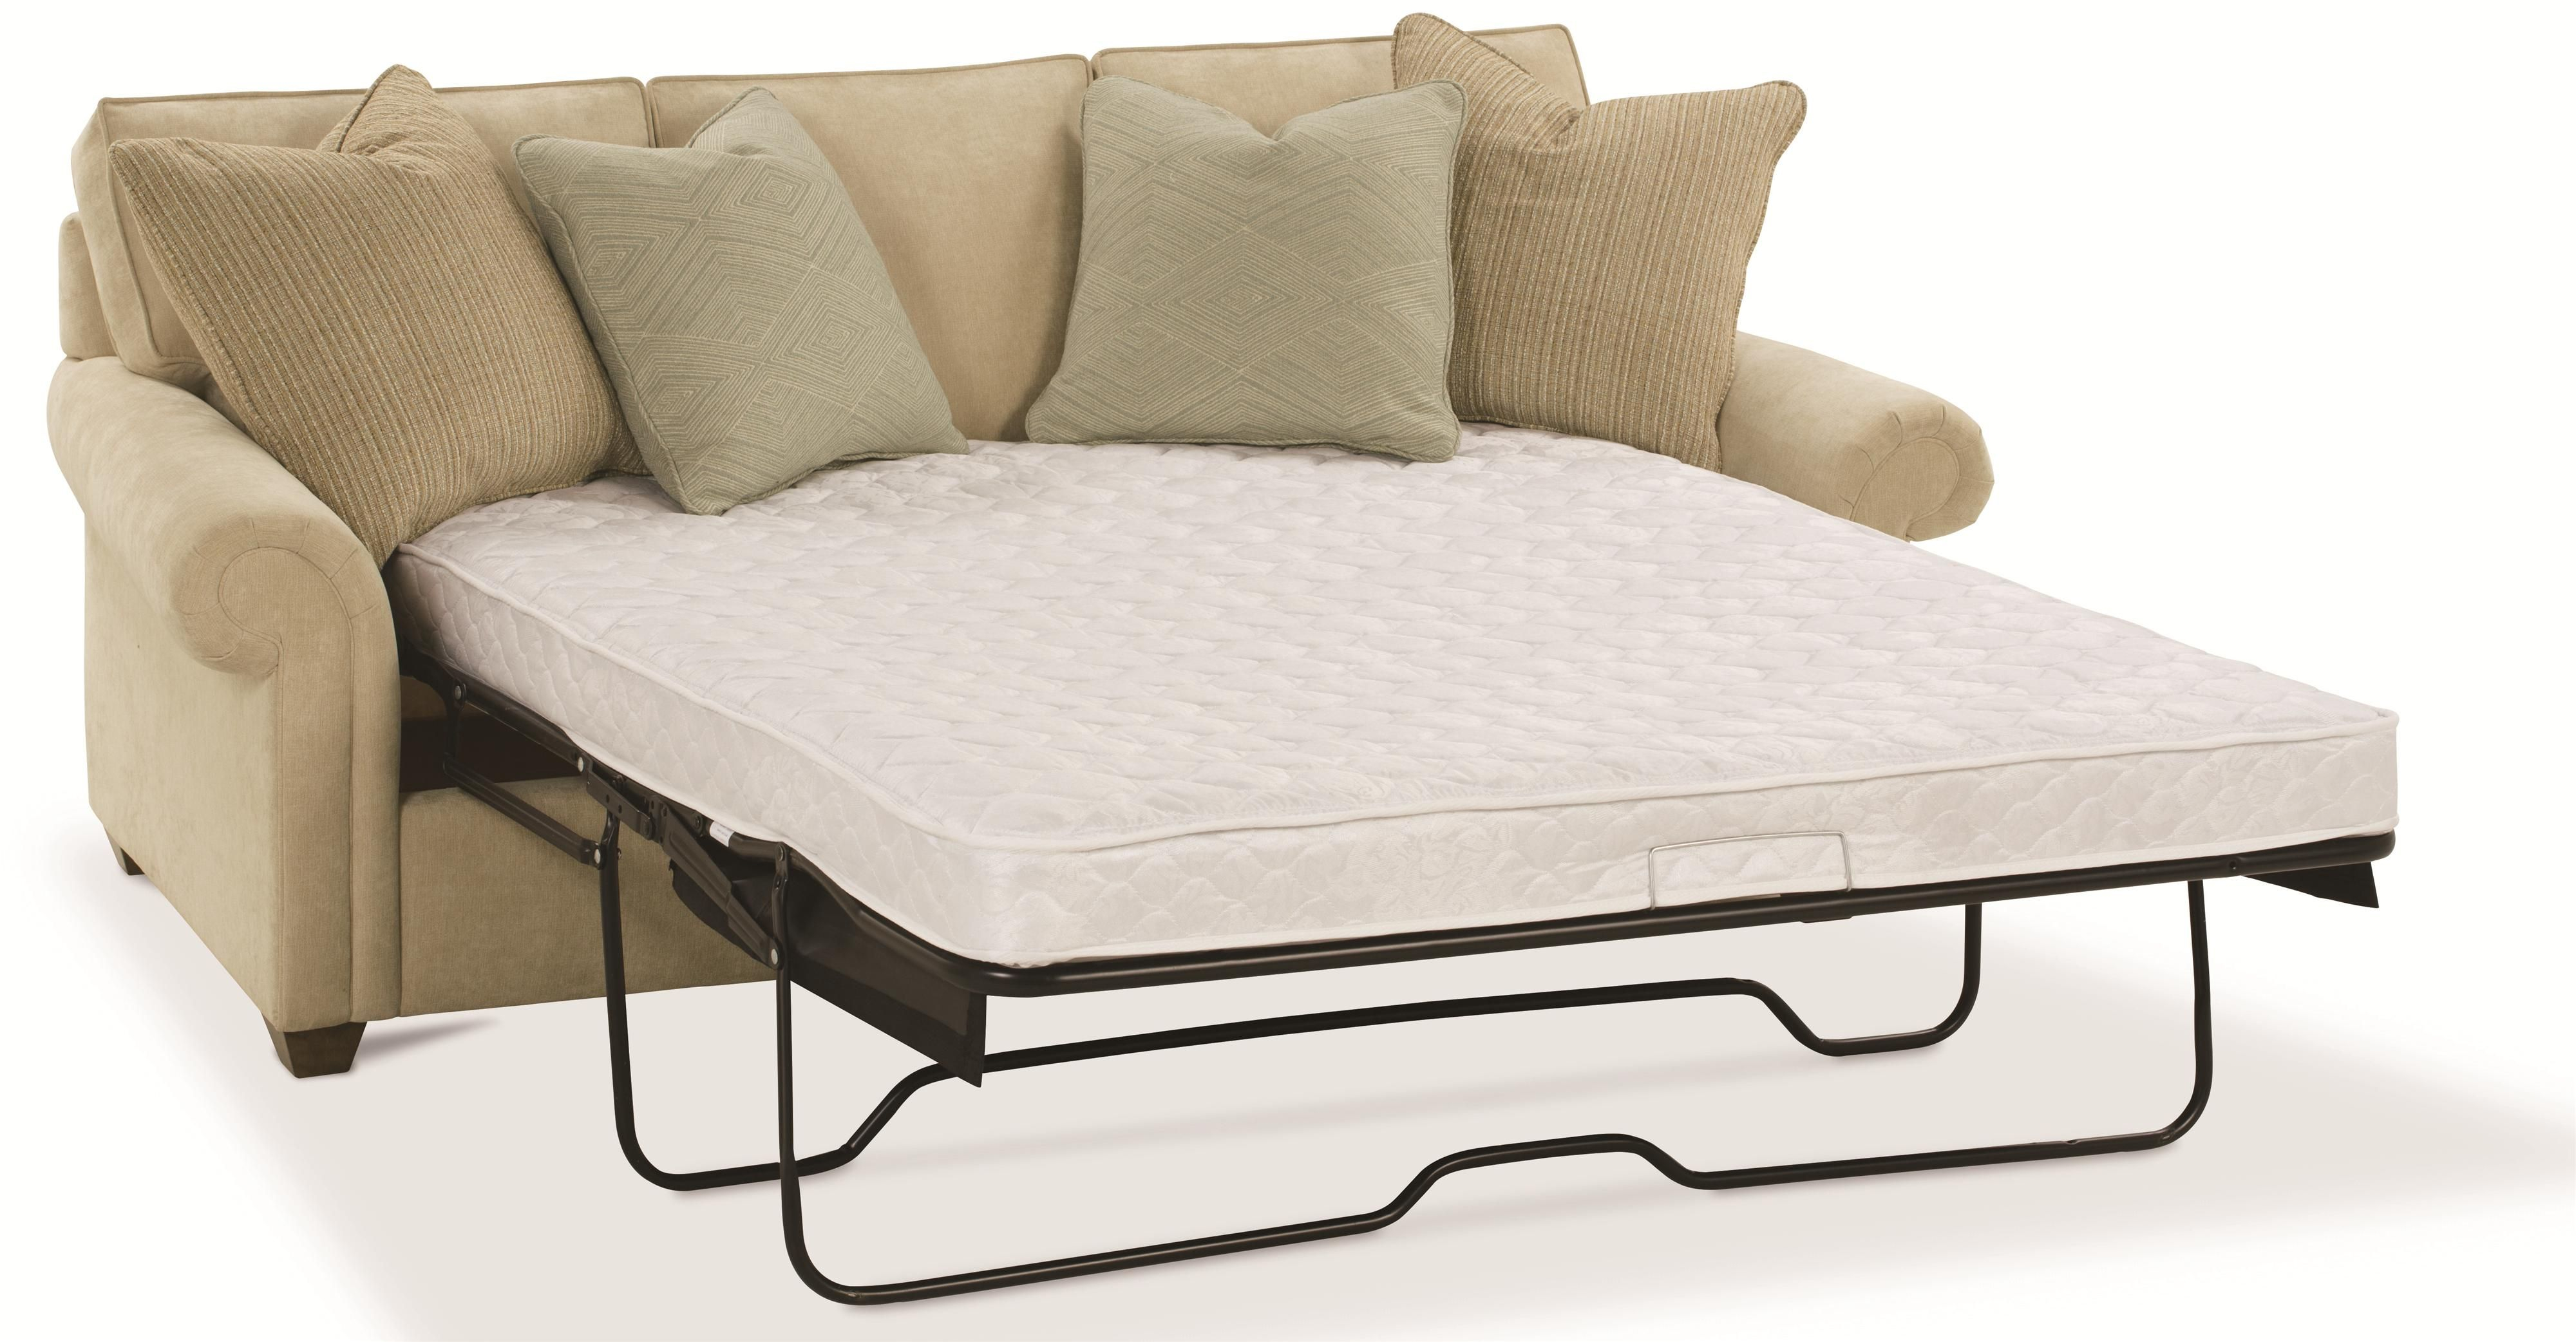 rowe sleeper sofa mattress